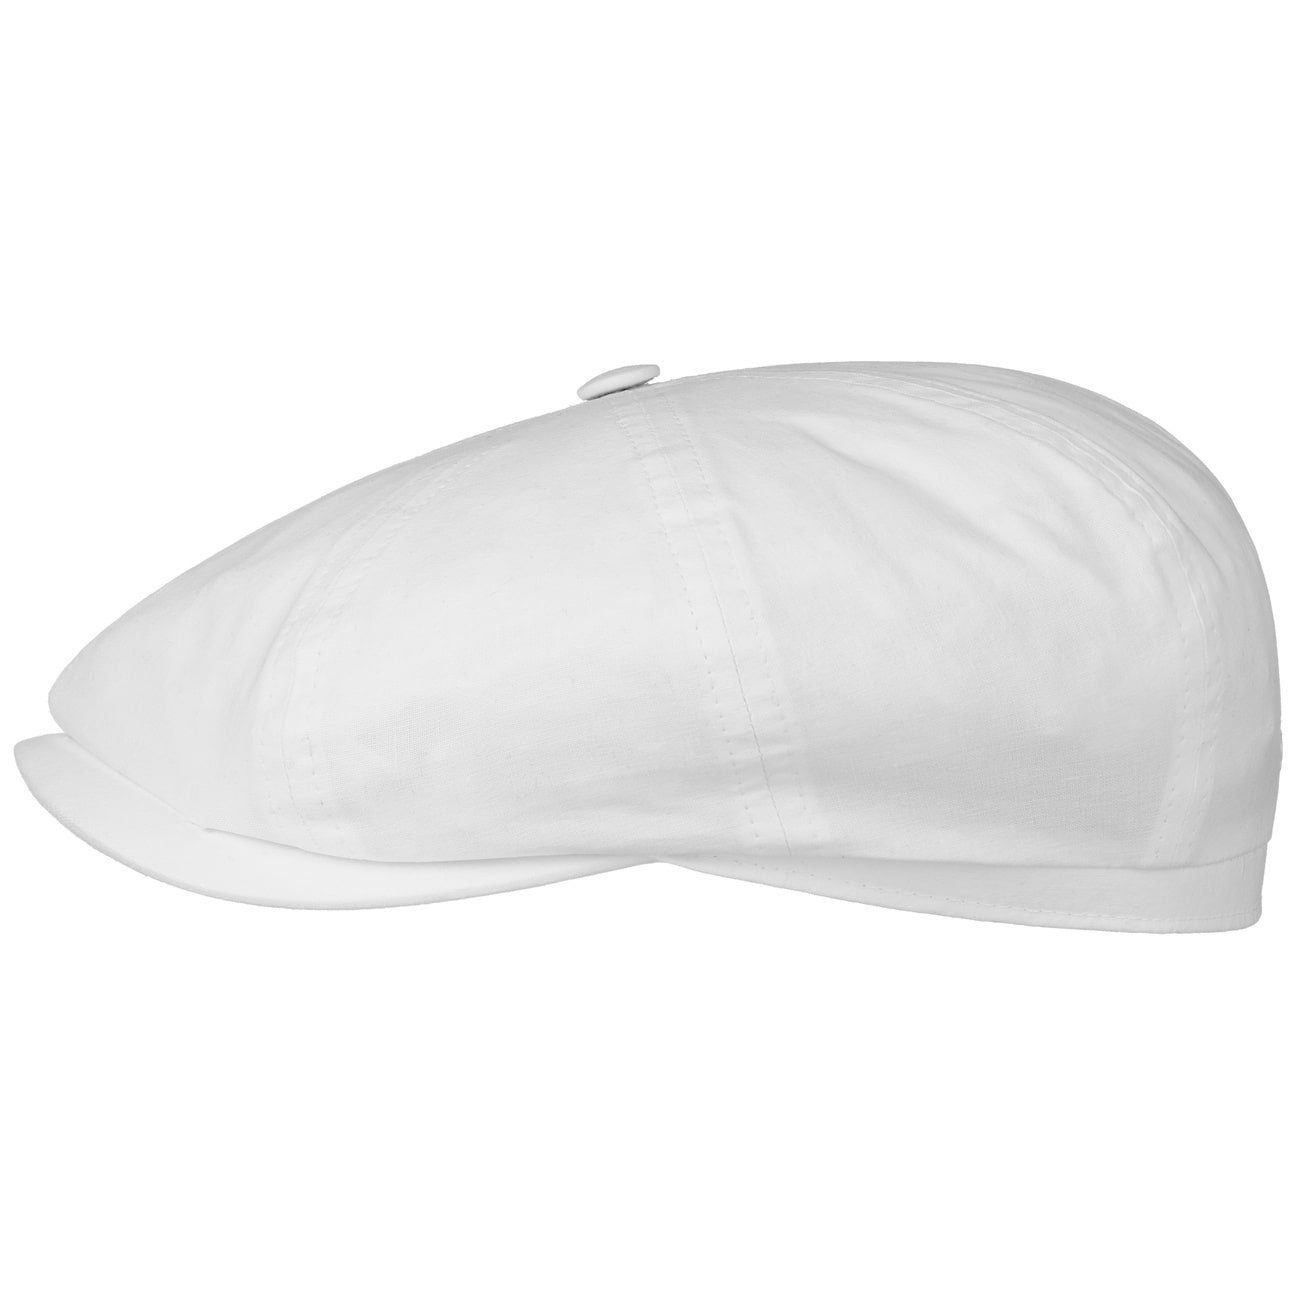 Stetson Ballonmütze Hatteras Organic aus Bio-Baumwolle Weiß